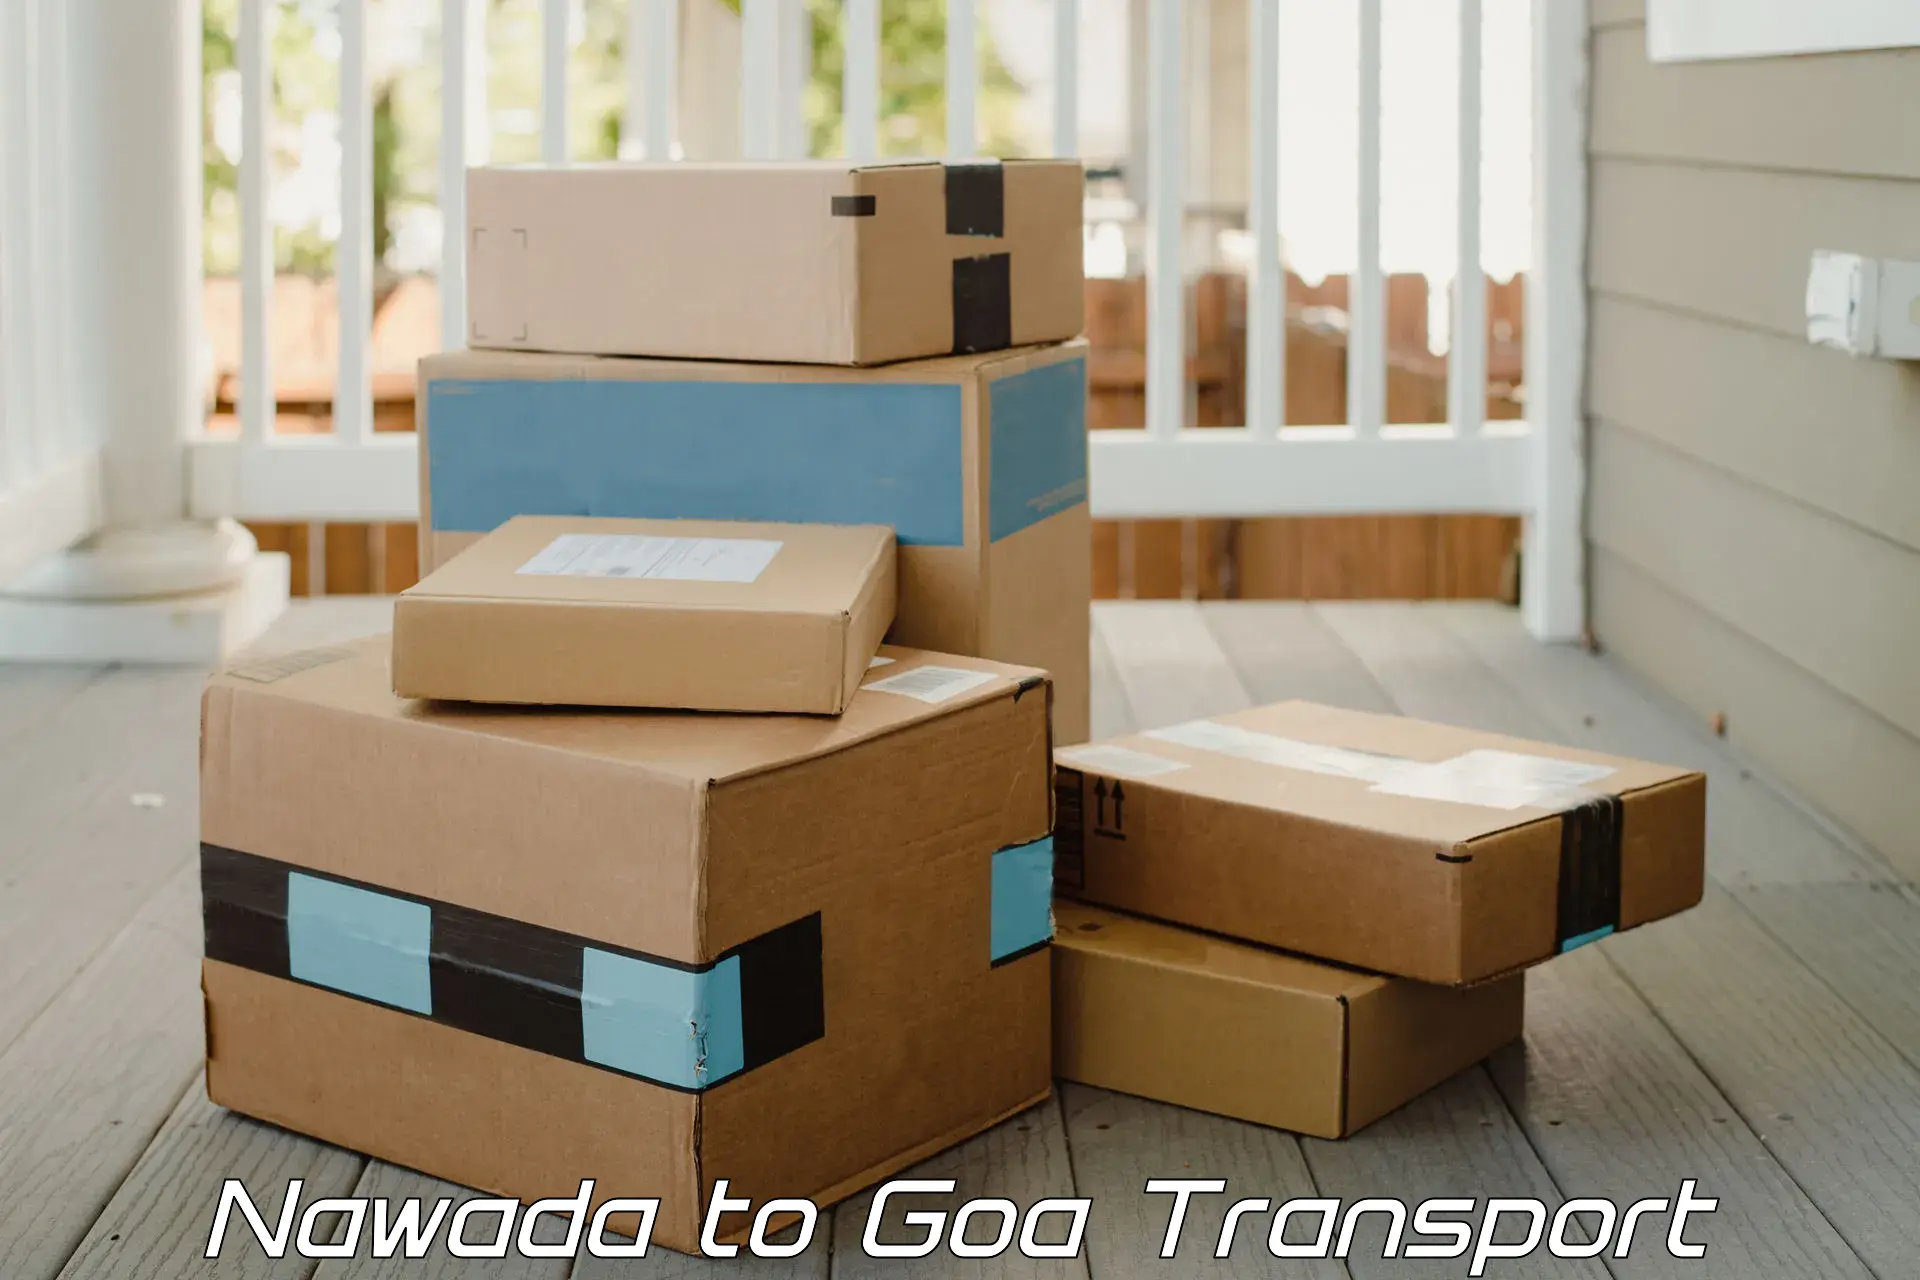 Bike transfer Nawada to NIT Goa